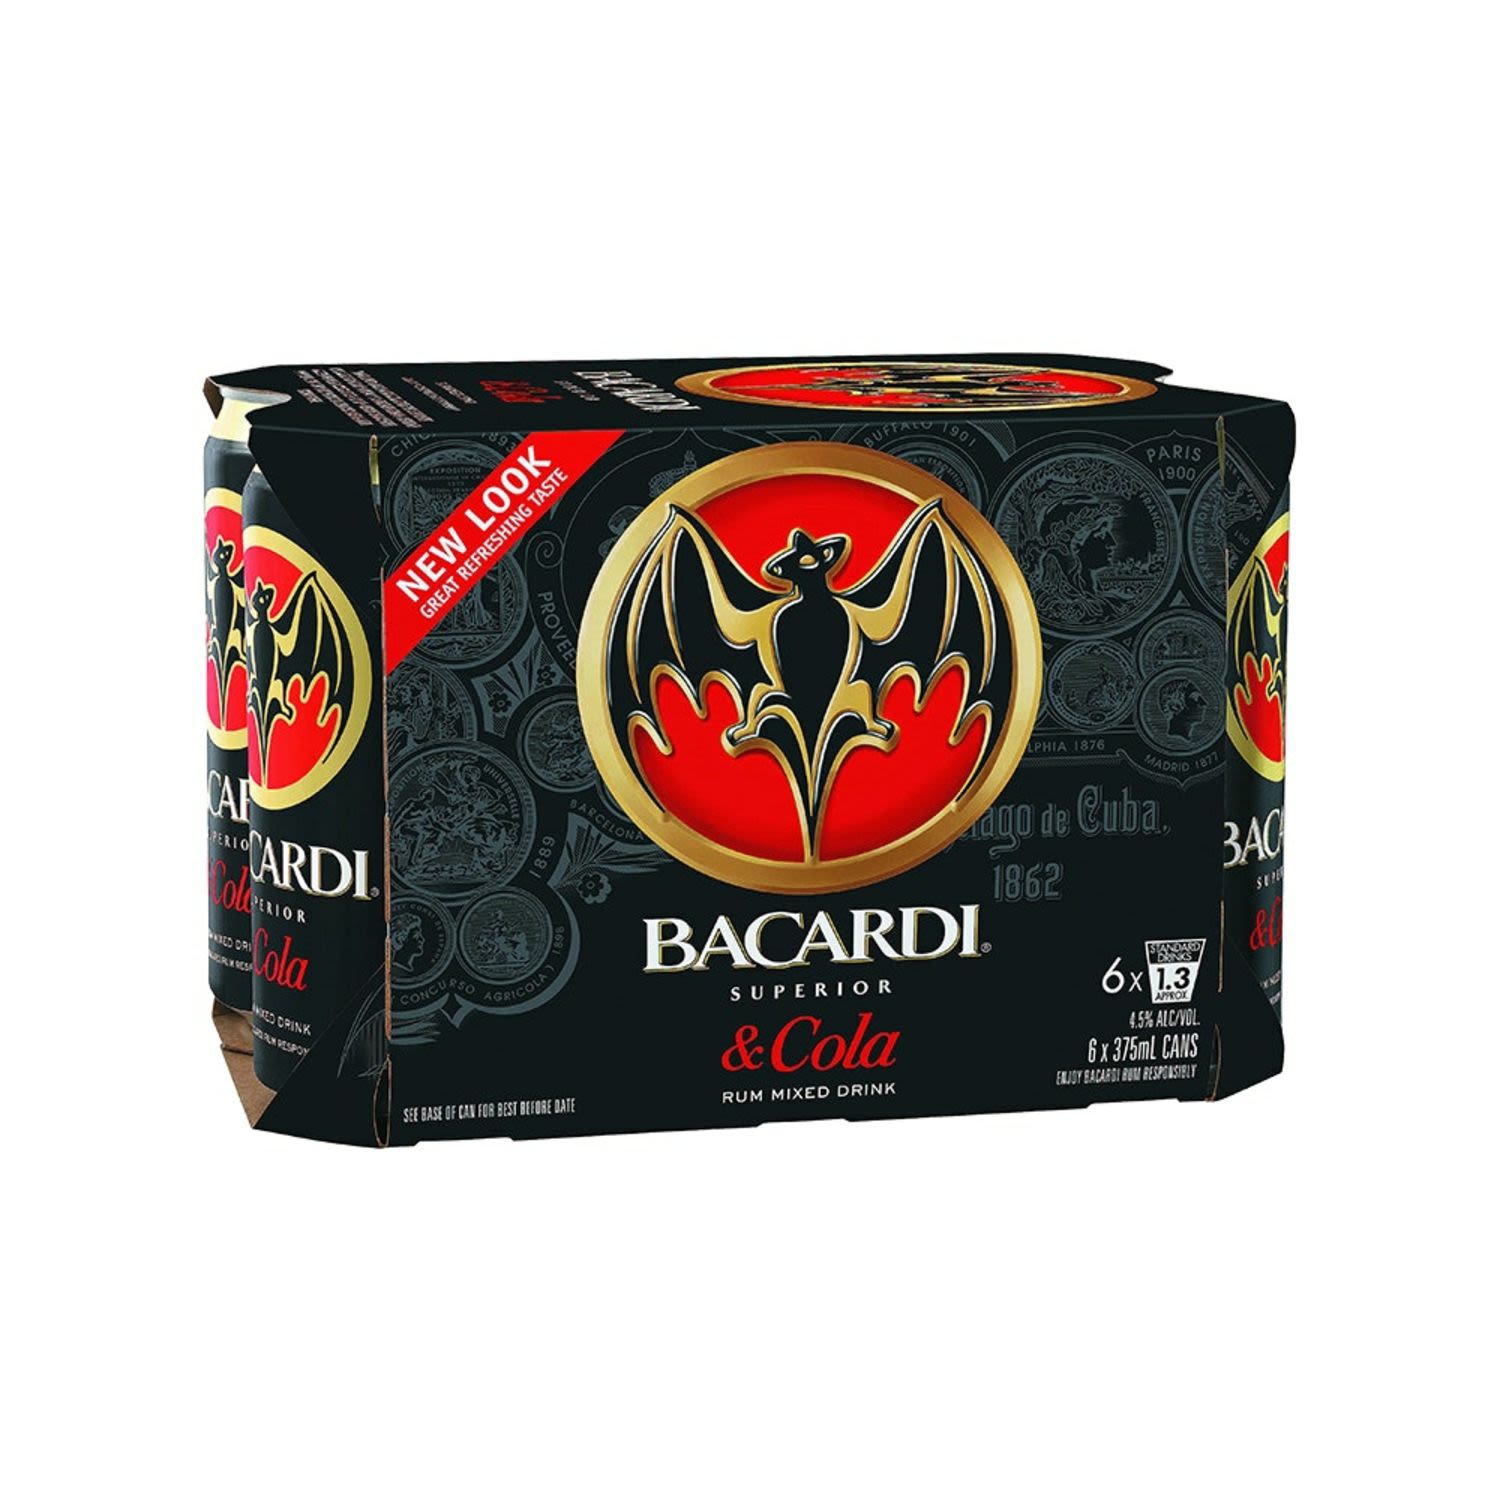 Bacardi Rum & Cola 375mL<br /> <br />Alcohol Volume: 4.50%<br /><br />Pack Format: 6 Pack<br /><br />Standard Drinks: 1.3</br /><br />Pack Type: Can<br />